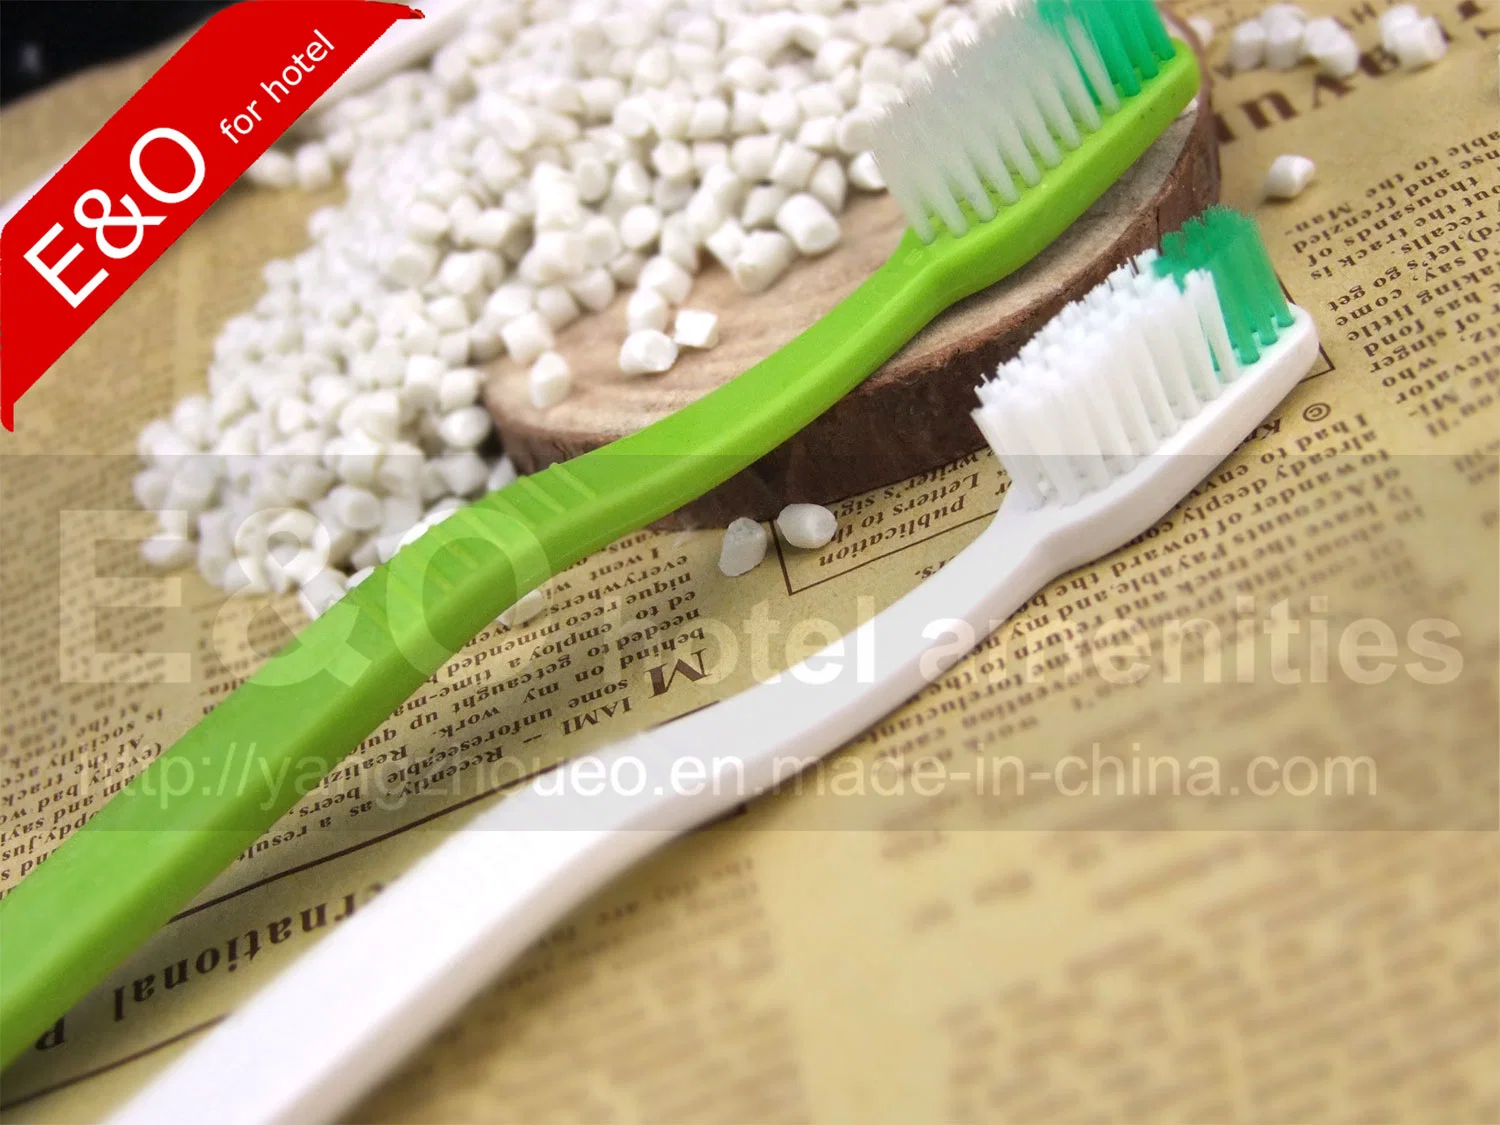 Escova de dentes de hotel descartável, degradável, biodegradável e barata.